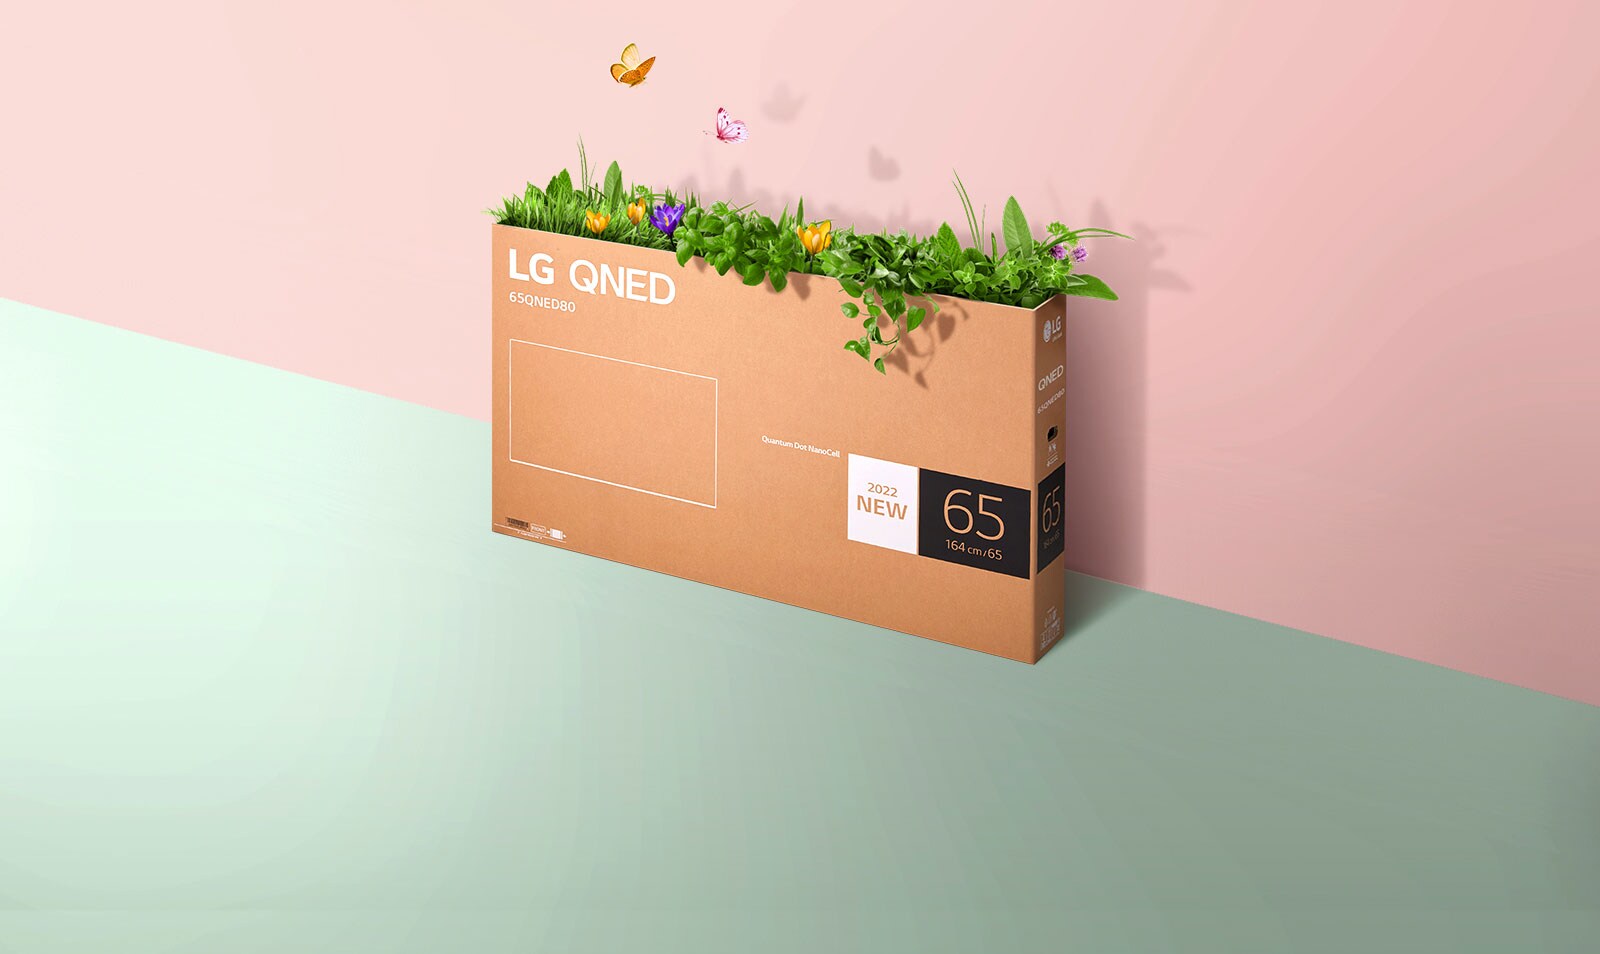 Ambalažna kutija QNED postavljena je spram ružičaste, zelene pozadine na kojoj raste trava, a leptiri se pojavljuju iz kutije. 